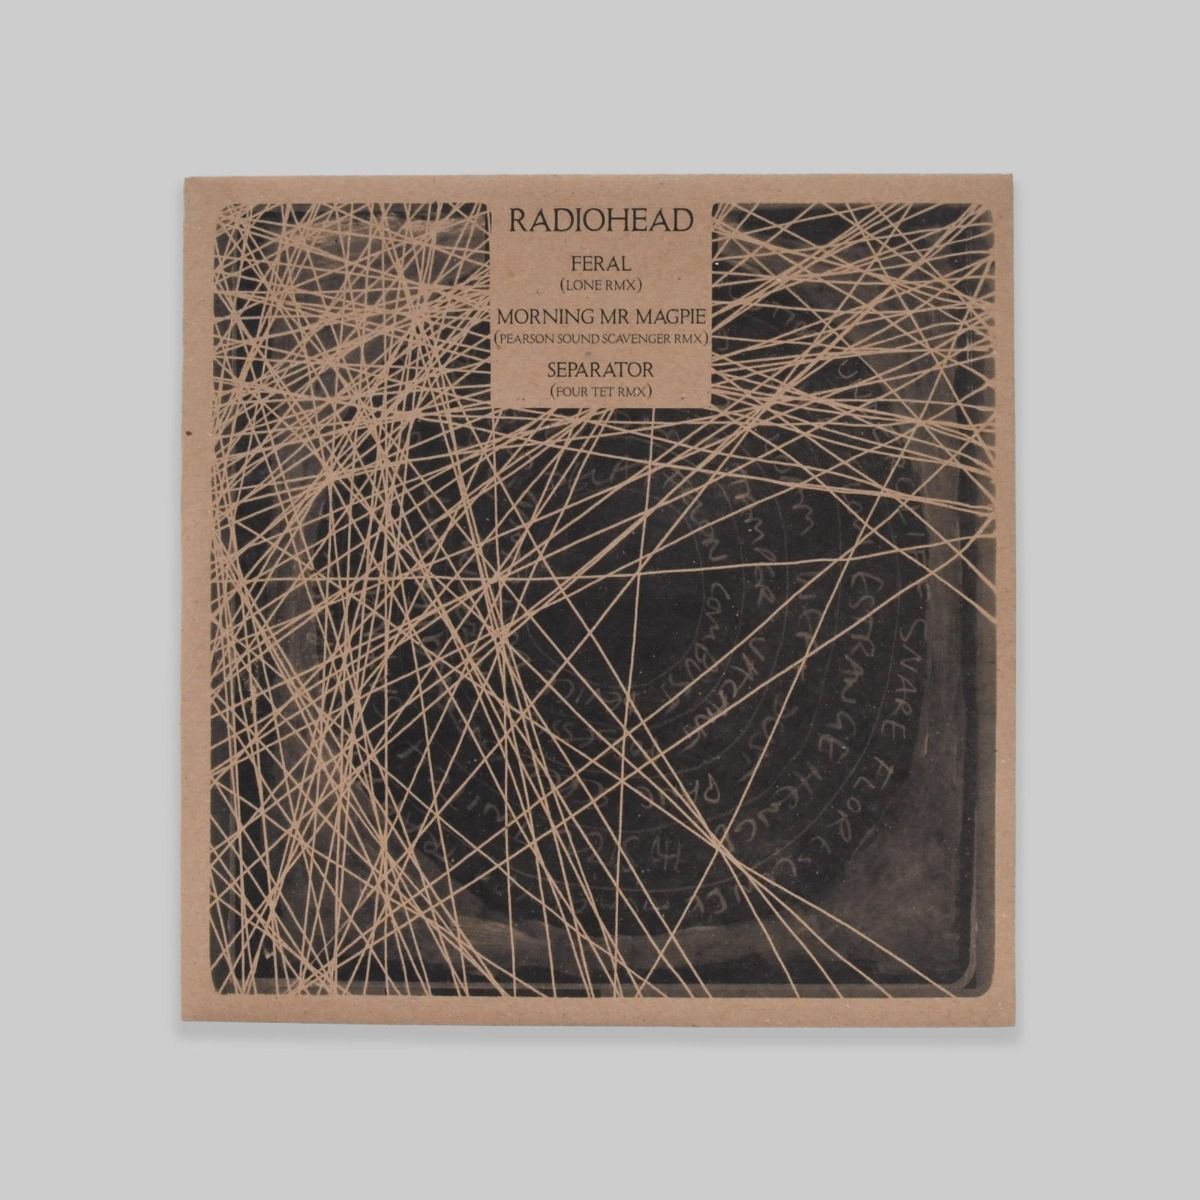 Radiohead – TKOL Remixes 3 (Lone / Pearson Sound / Four Tet) 12"